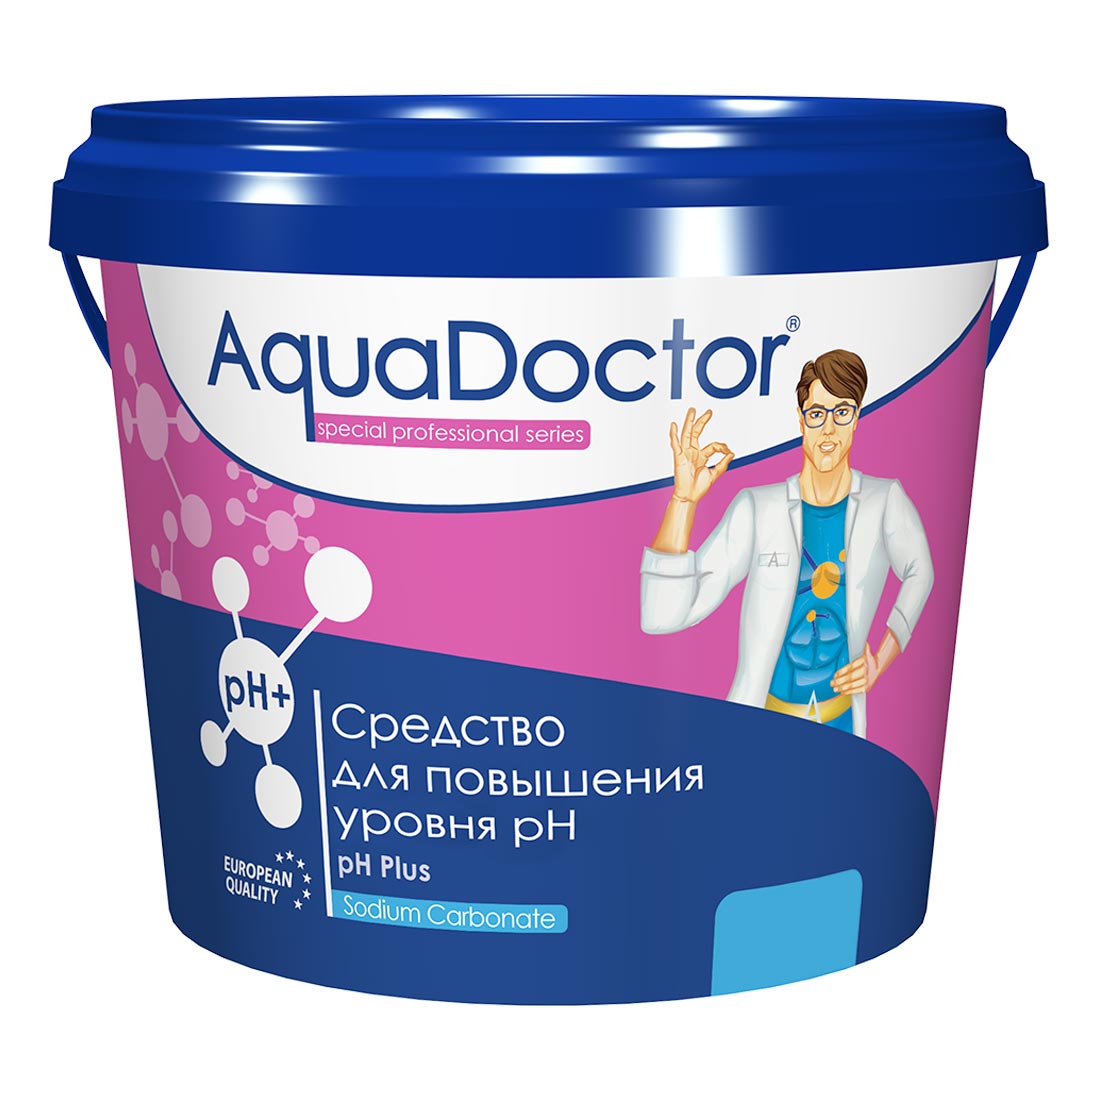 PH Плюс, 25кг ведро, гранулы для повышения уровня рН воды (PHP-25), AquaDoctor AQ19250